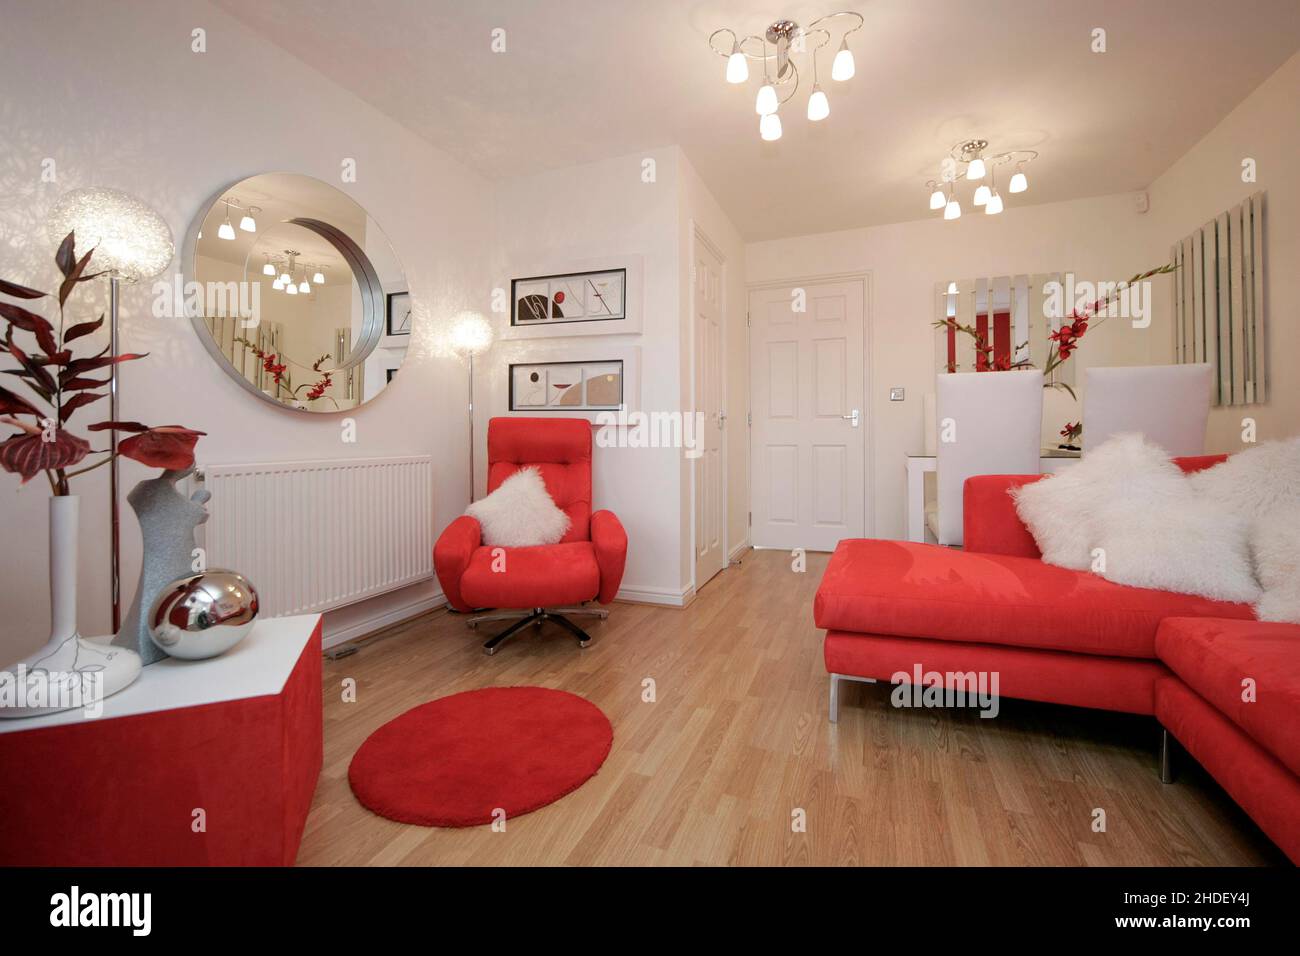 Salón moderno con suelo laminado de efecto madera y sofá de esquina, silla,  muebles de color rojo escarlata. Decoración roja. Mesa de comedor blanca  Fotografía de stock - Alamy